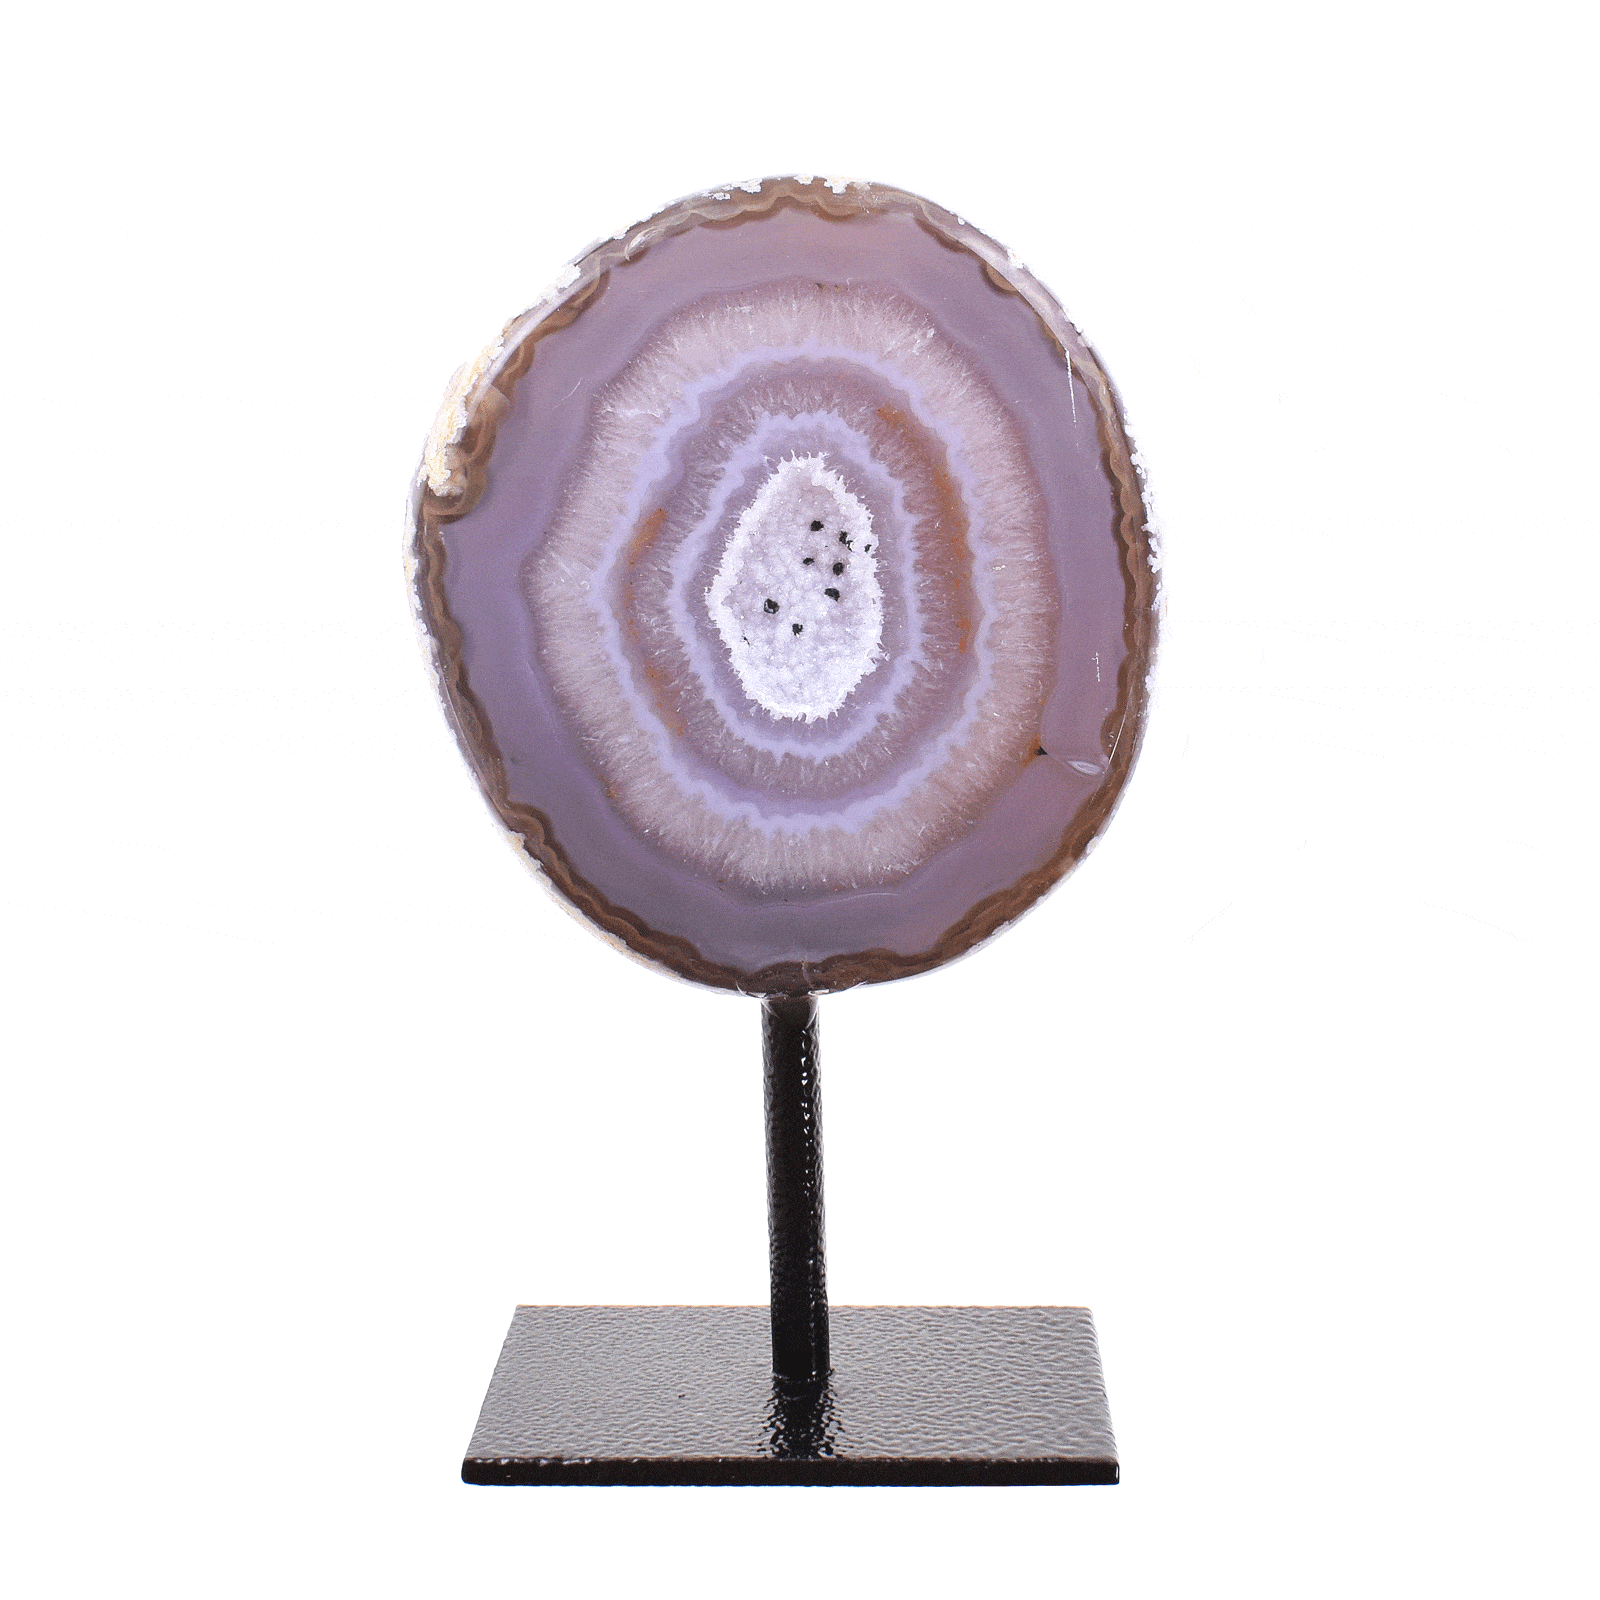 Γεώδες φυσικής πέτρας Αχάτη με Κρύσταλλα Χαλαζία στο εσωτερικό του. Ο Αχάτης είναι ενσωματωμένος σε μαύρη μεταλλική βάση και το μέγιστο ύψος είναι 13,5cm. Αγοράστε online shop.